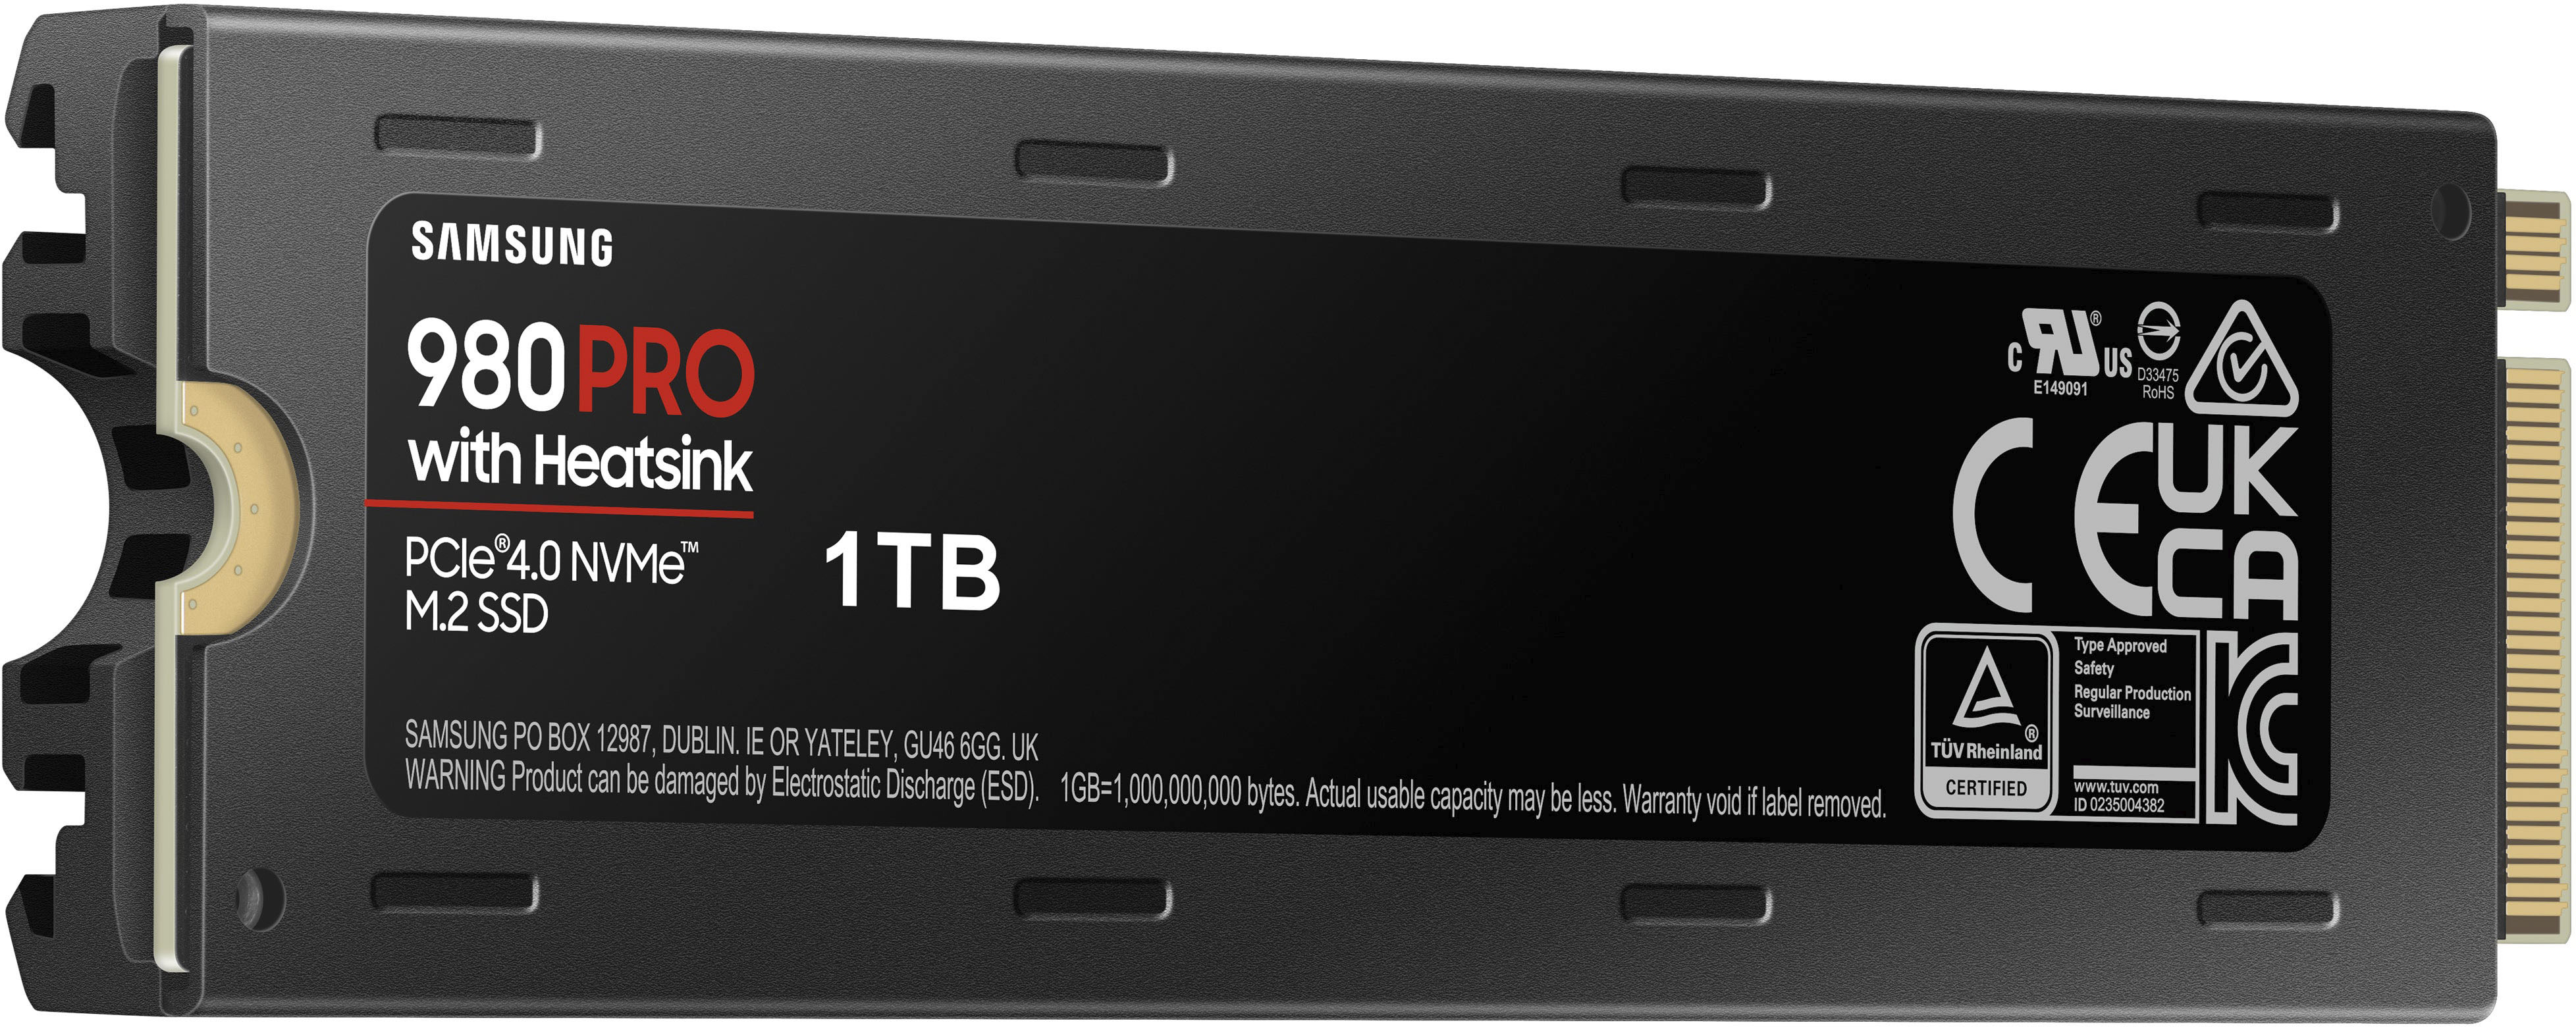 Samsung 980 PRO Heatsink 1TB Internal SSD PCIe Gen 4 x4 NVMe for PS5 MZ-V8P1T0CW  - Best Buy